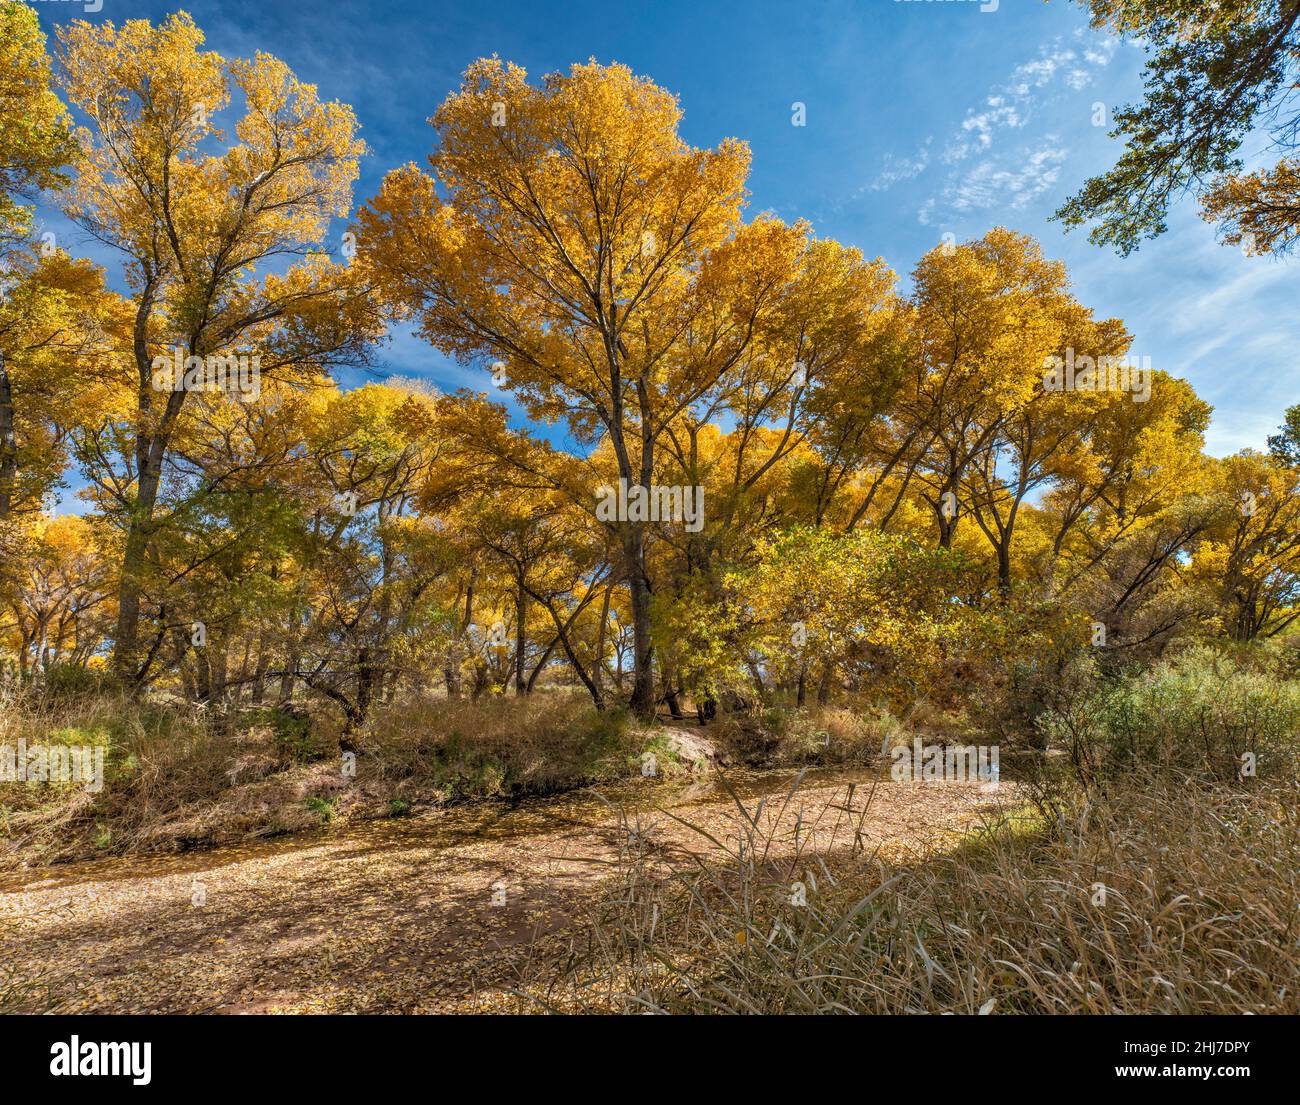 Forêt riveraine d'arbres en bois de coton de Fremont, au-dessus du chenal de la rivière San Pedro, San Pedro Riparian NCA, près de Sierra Vista, Arizona, États-Unis Banque D'Images